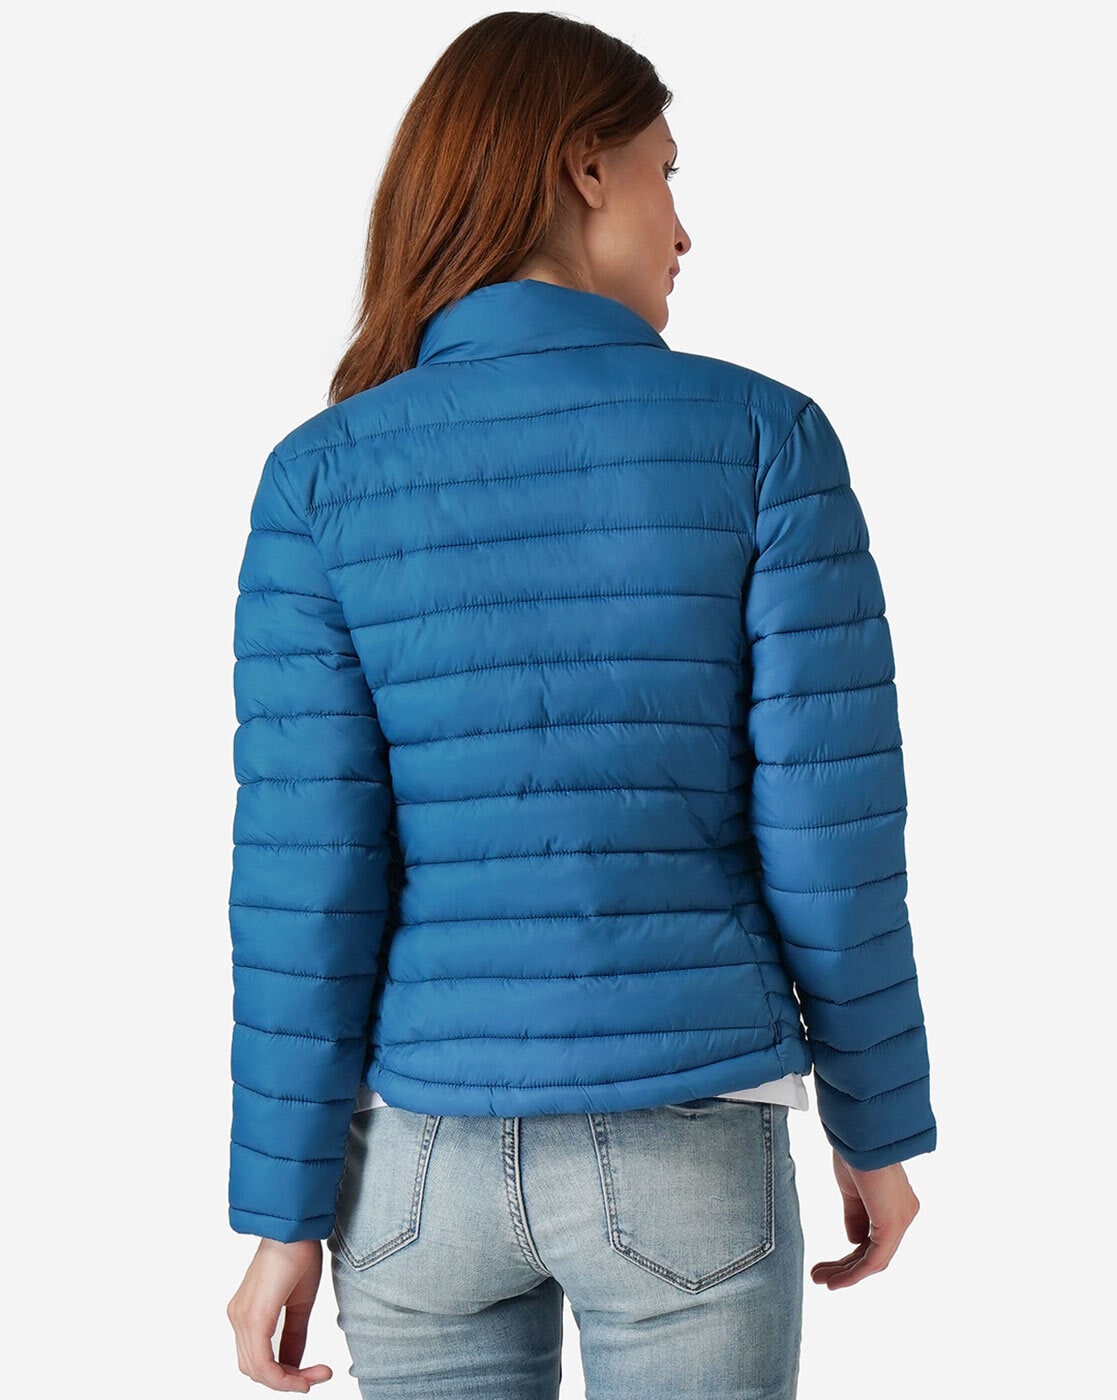 Amazon Sale Today Jackets For Women पर आ गई गर्मी वाली डील 76 की तगड़ी छूट  पर दनादन खरीद रहे हैं लोग - Amazon Sale Today: Jackets For Women पर आ गई